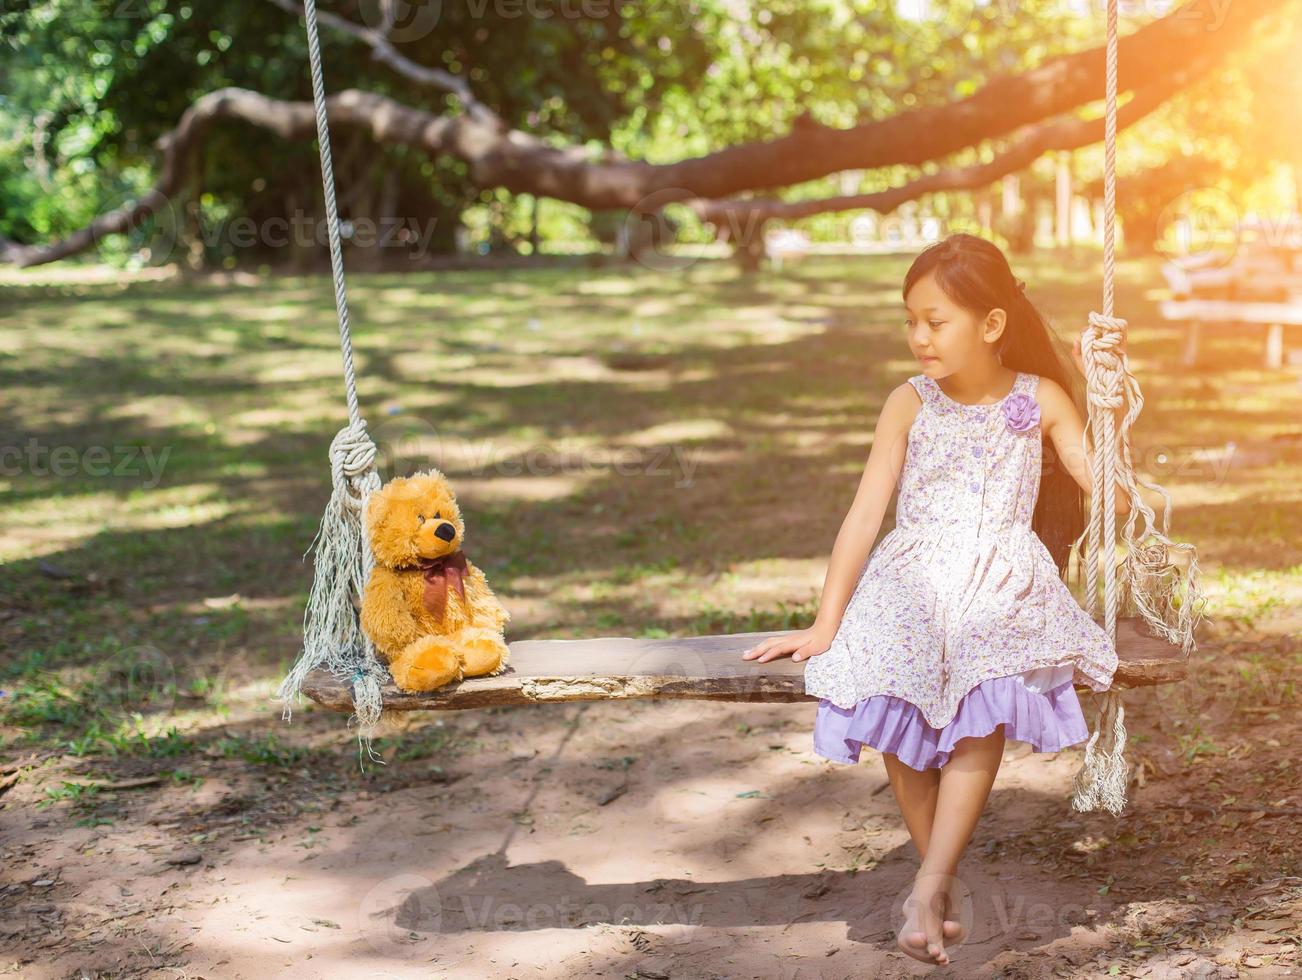 schattig klein meisje zit schommels, teddybeer zit met haar, klein meisje wees naar de boom. foto